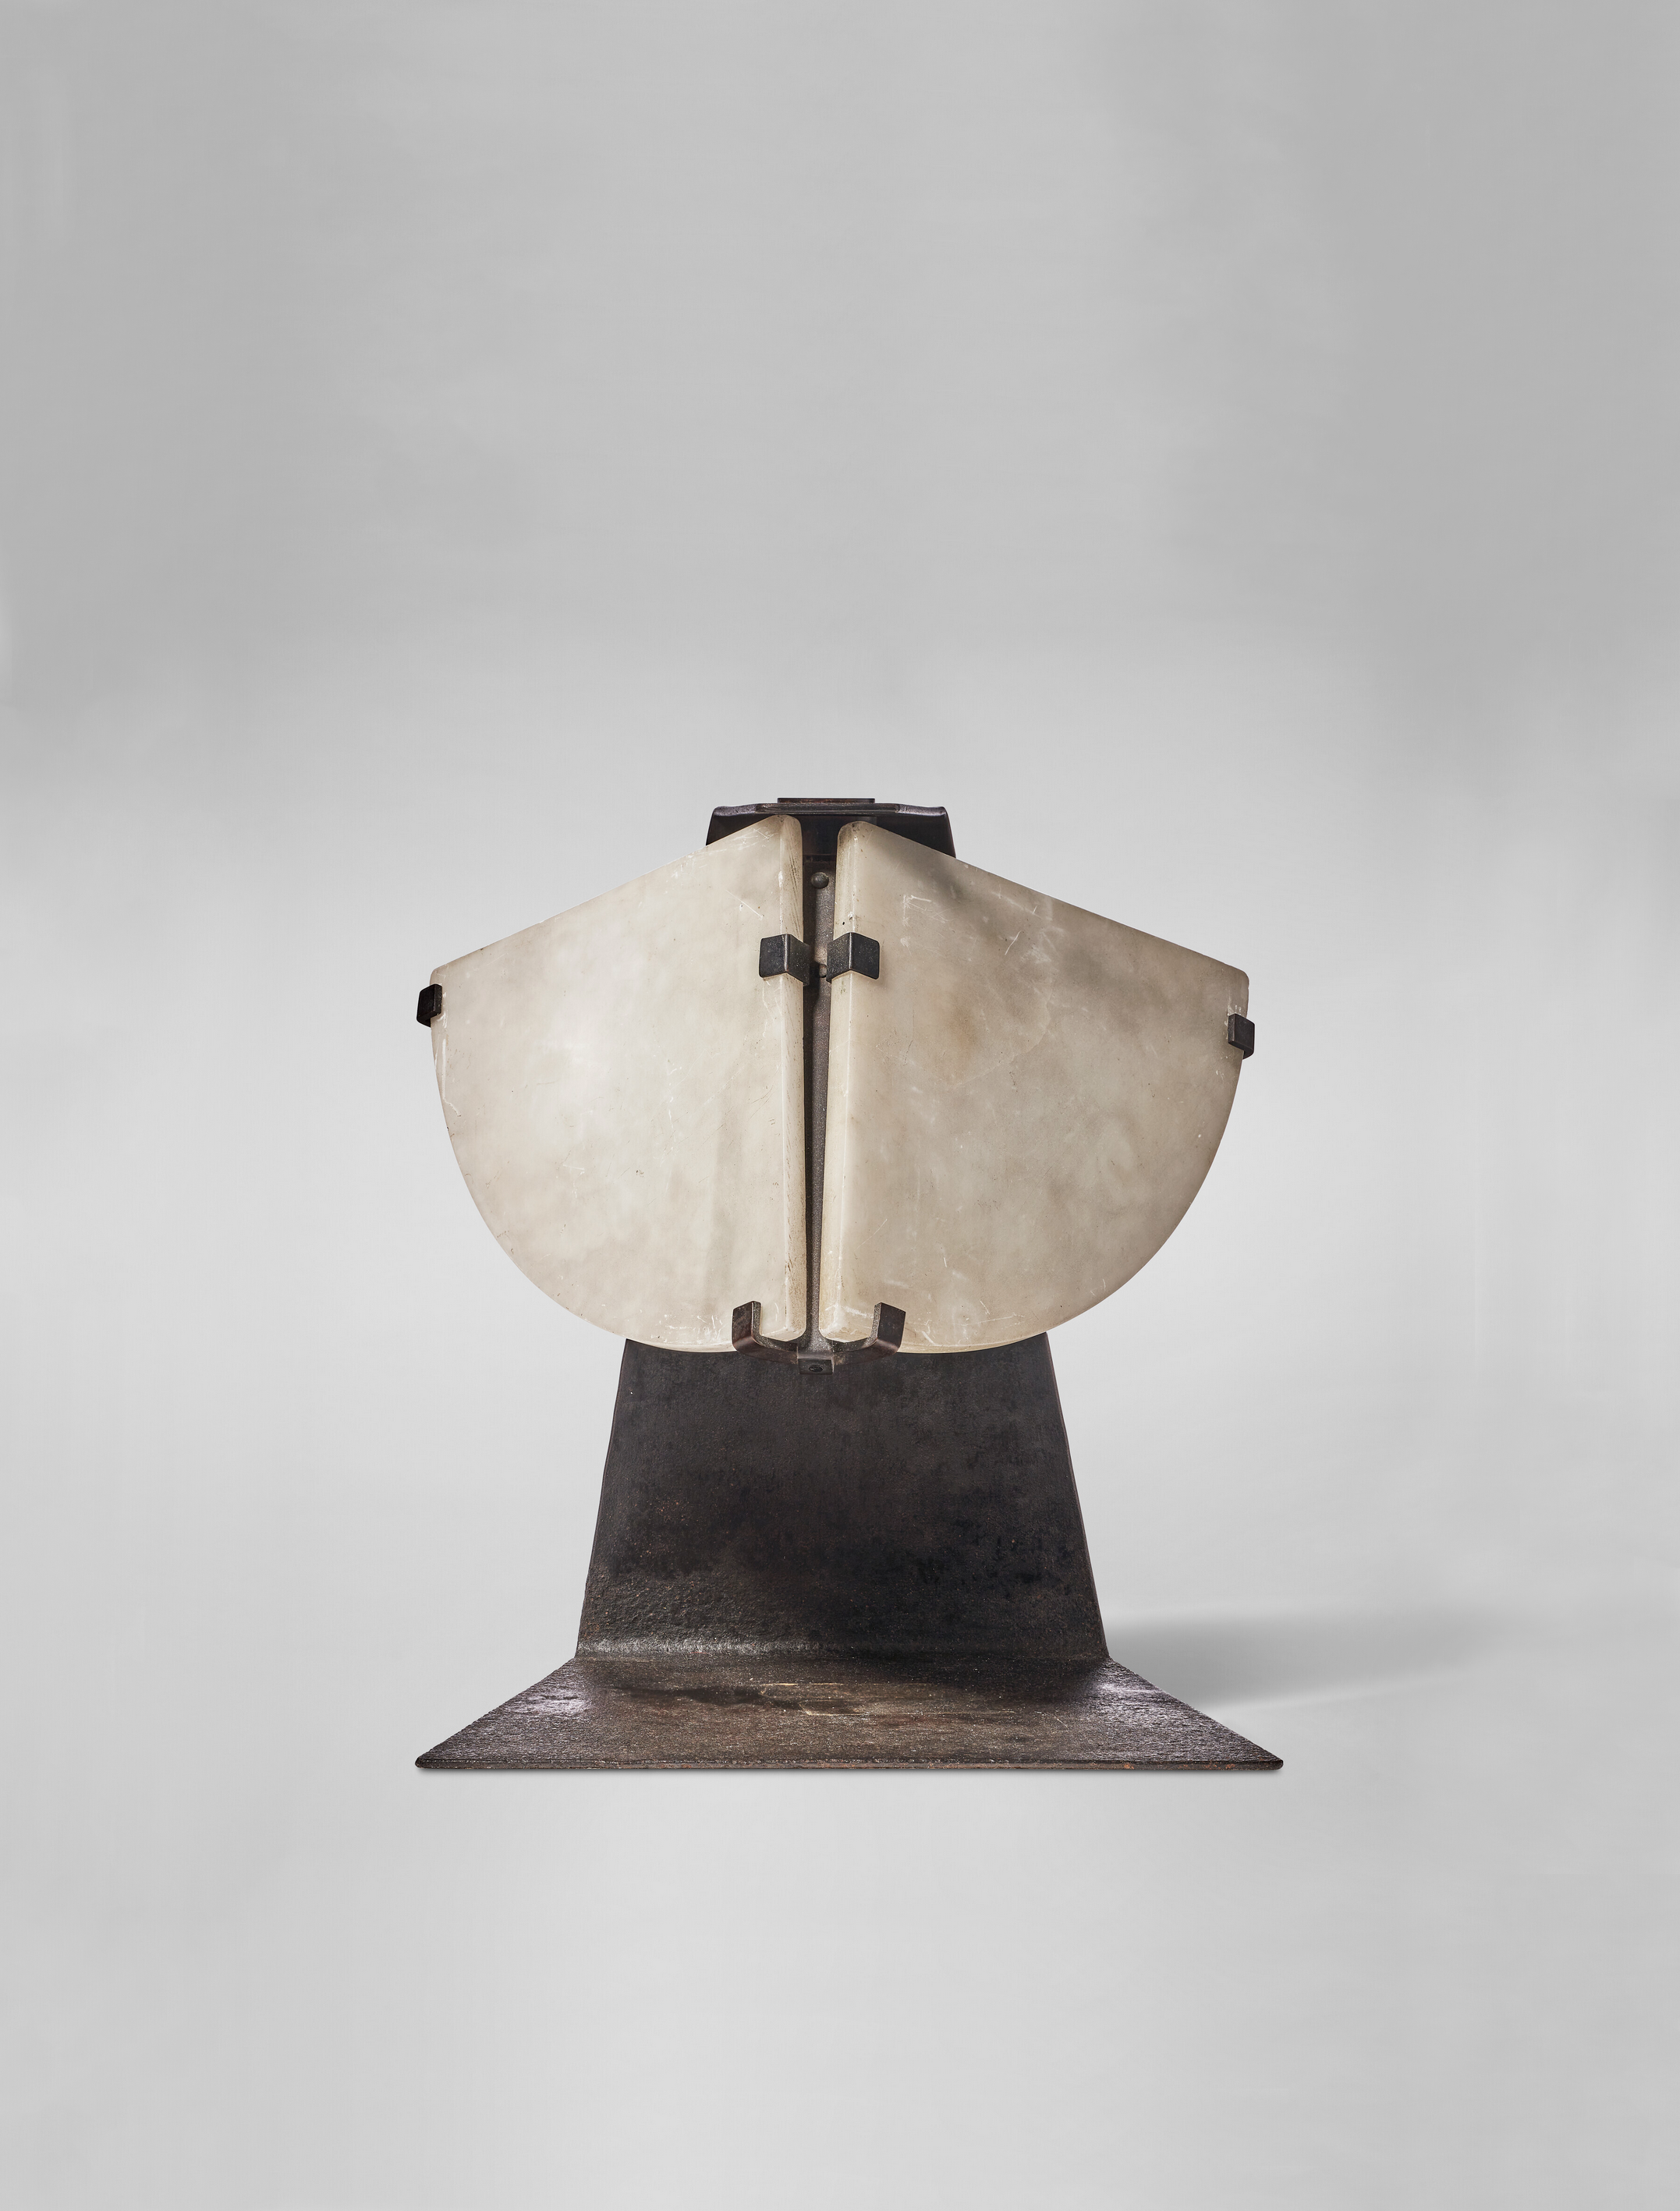 Pierre Chareau, “Masque” Lamp, vue 01